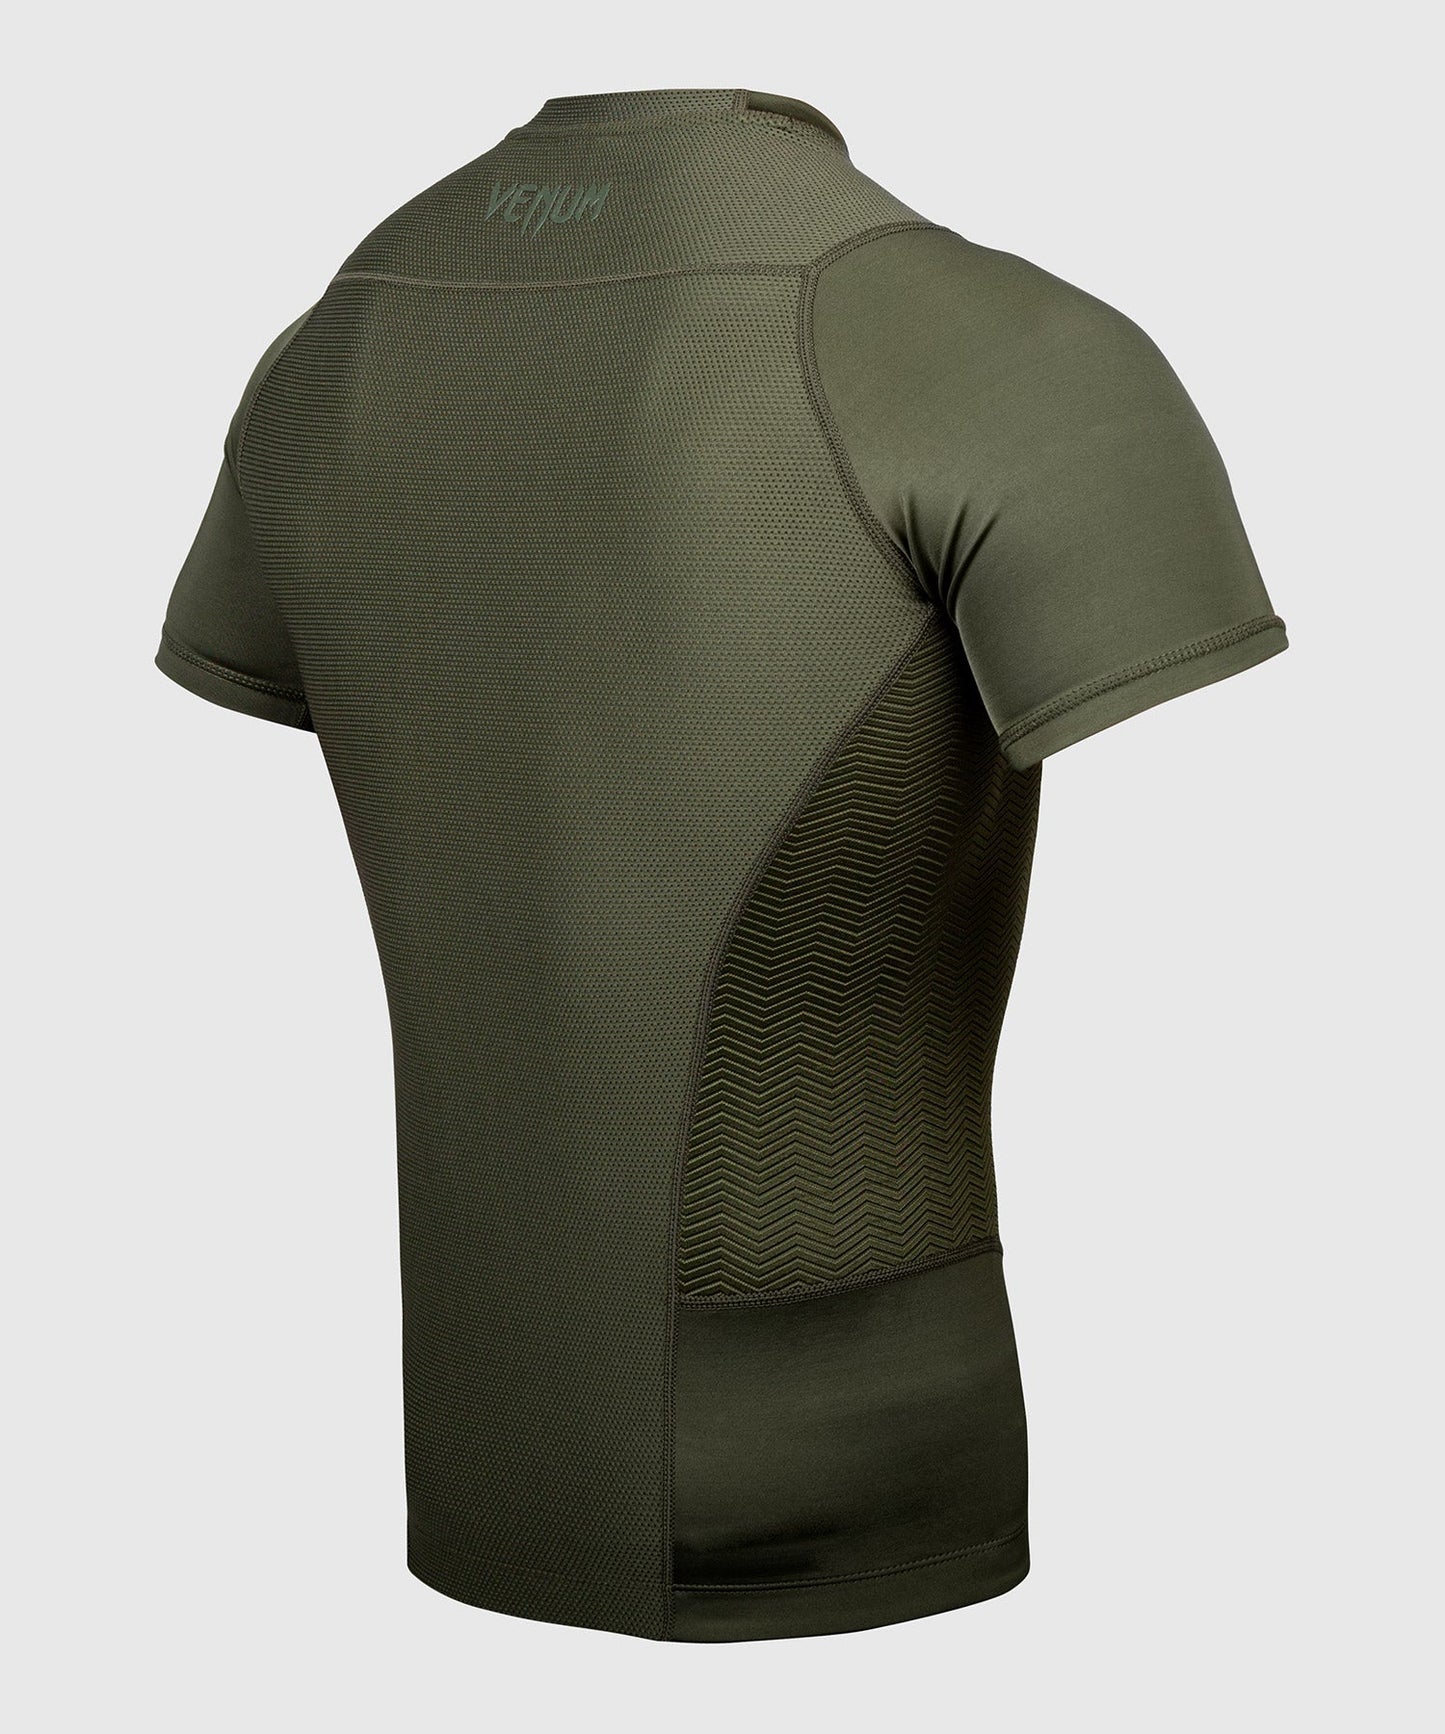 Rashguard Venum G-Fit - Manches courtes - T-shirts de compression